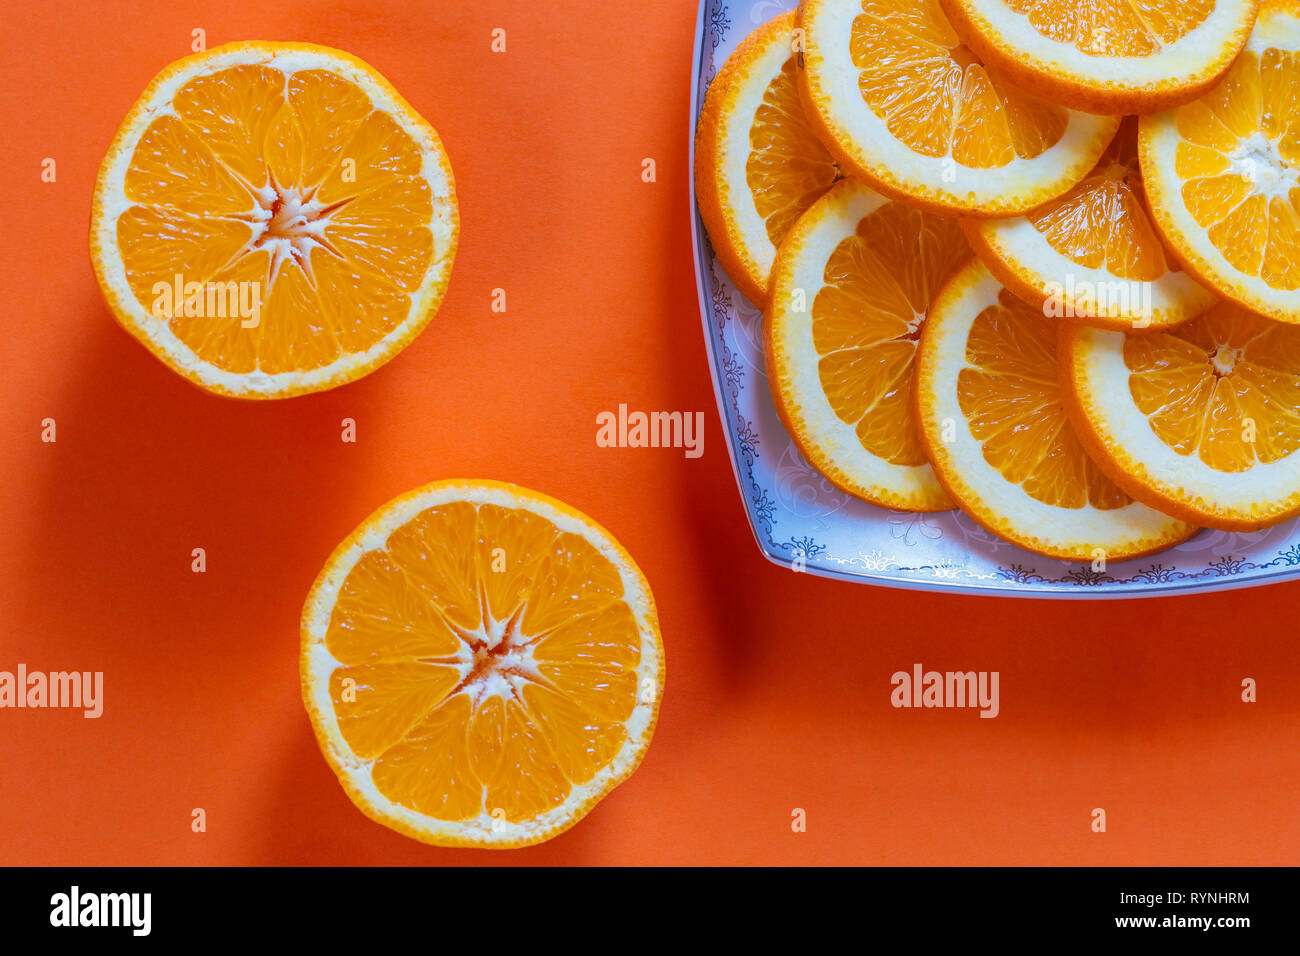 Sliced oranges on a orange background Stock Photo